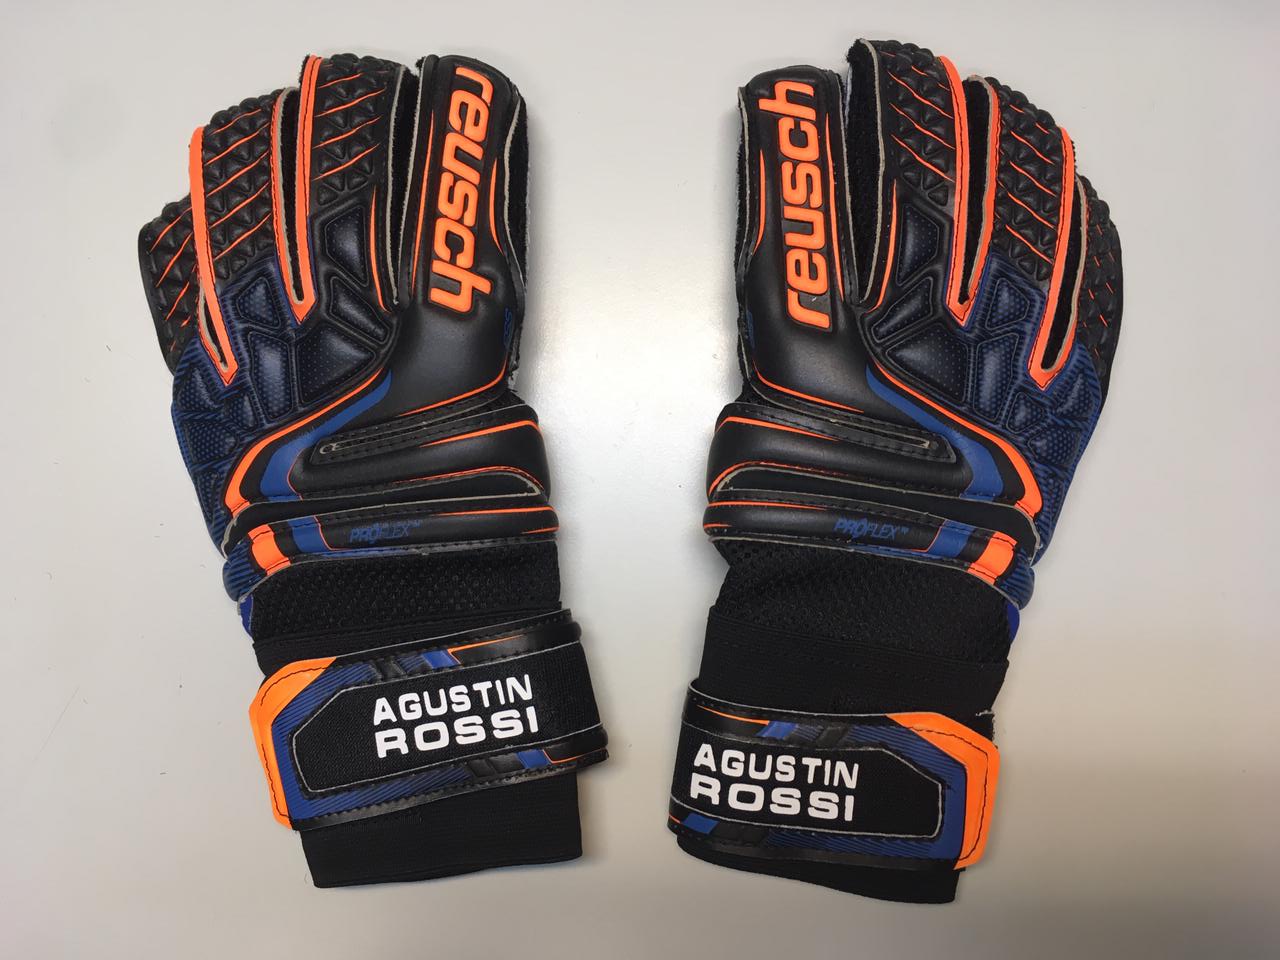 𝐁𝐚𝐫 𝐃𝐞𝐩𝐨𝐫𝐭𝐢𝐯𝐨 on Twitter: Este viernes sorteamos un par de guantes similares a los que utiliza Agustín Rossi, el arquero de Boca Juniors. Para participar simplemente RT a este